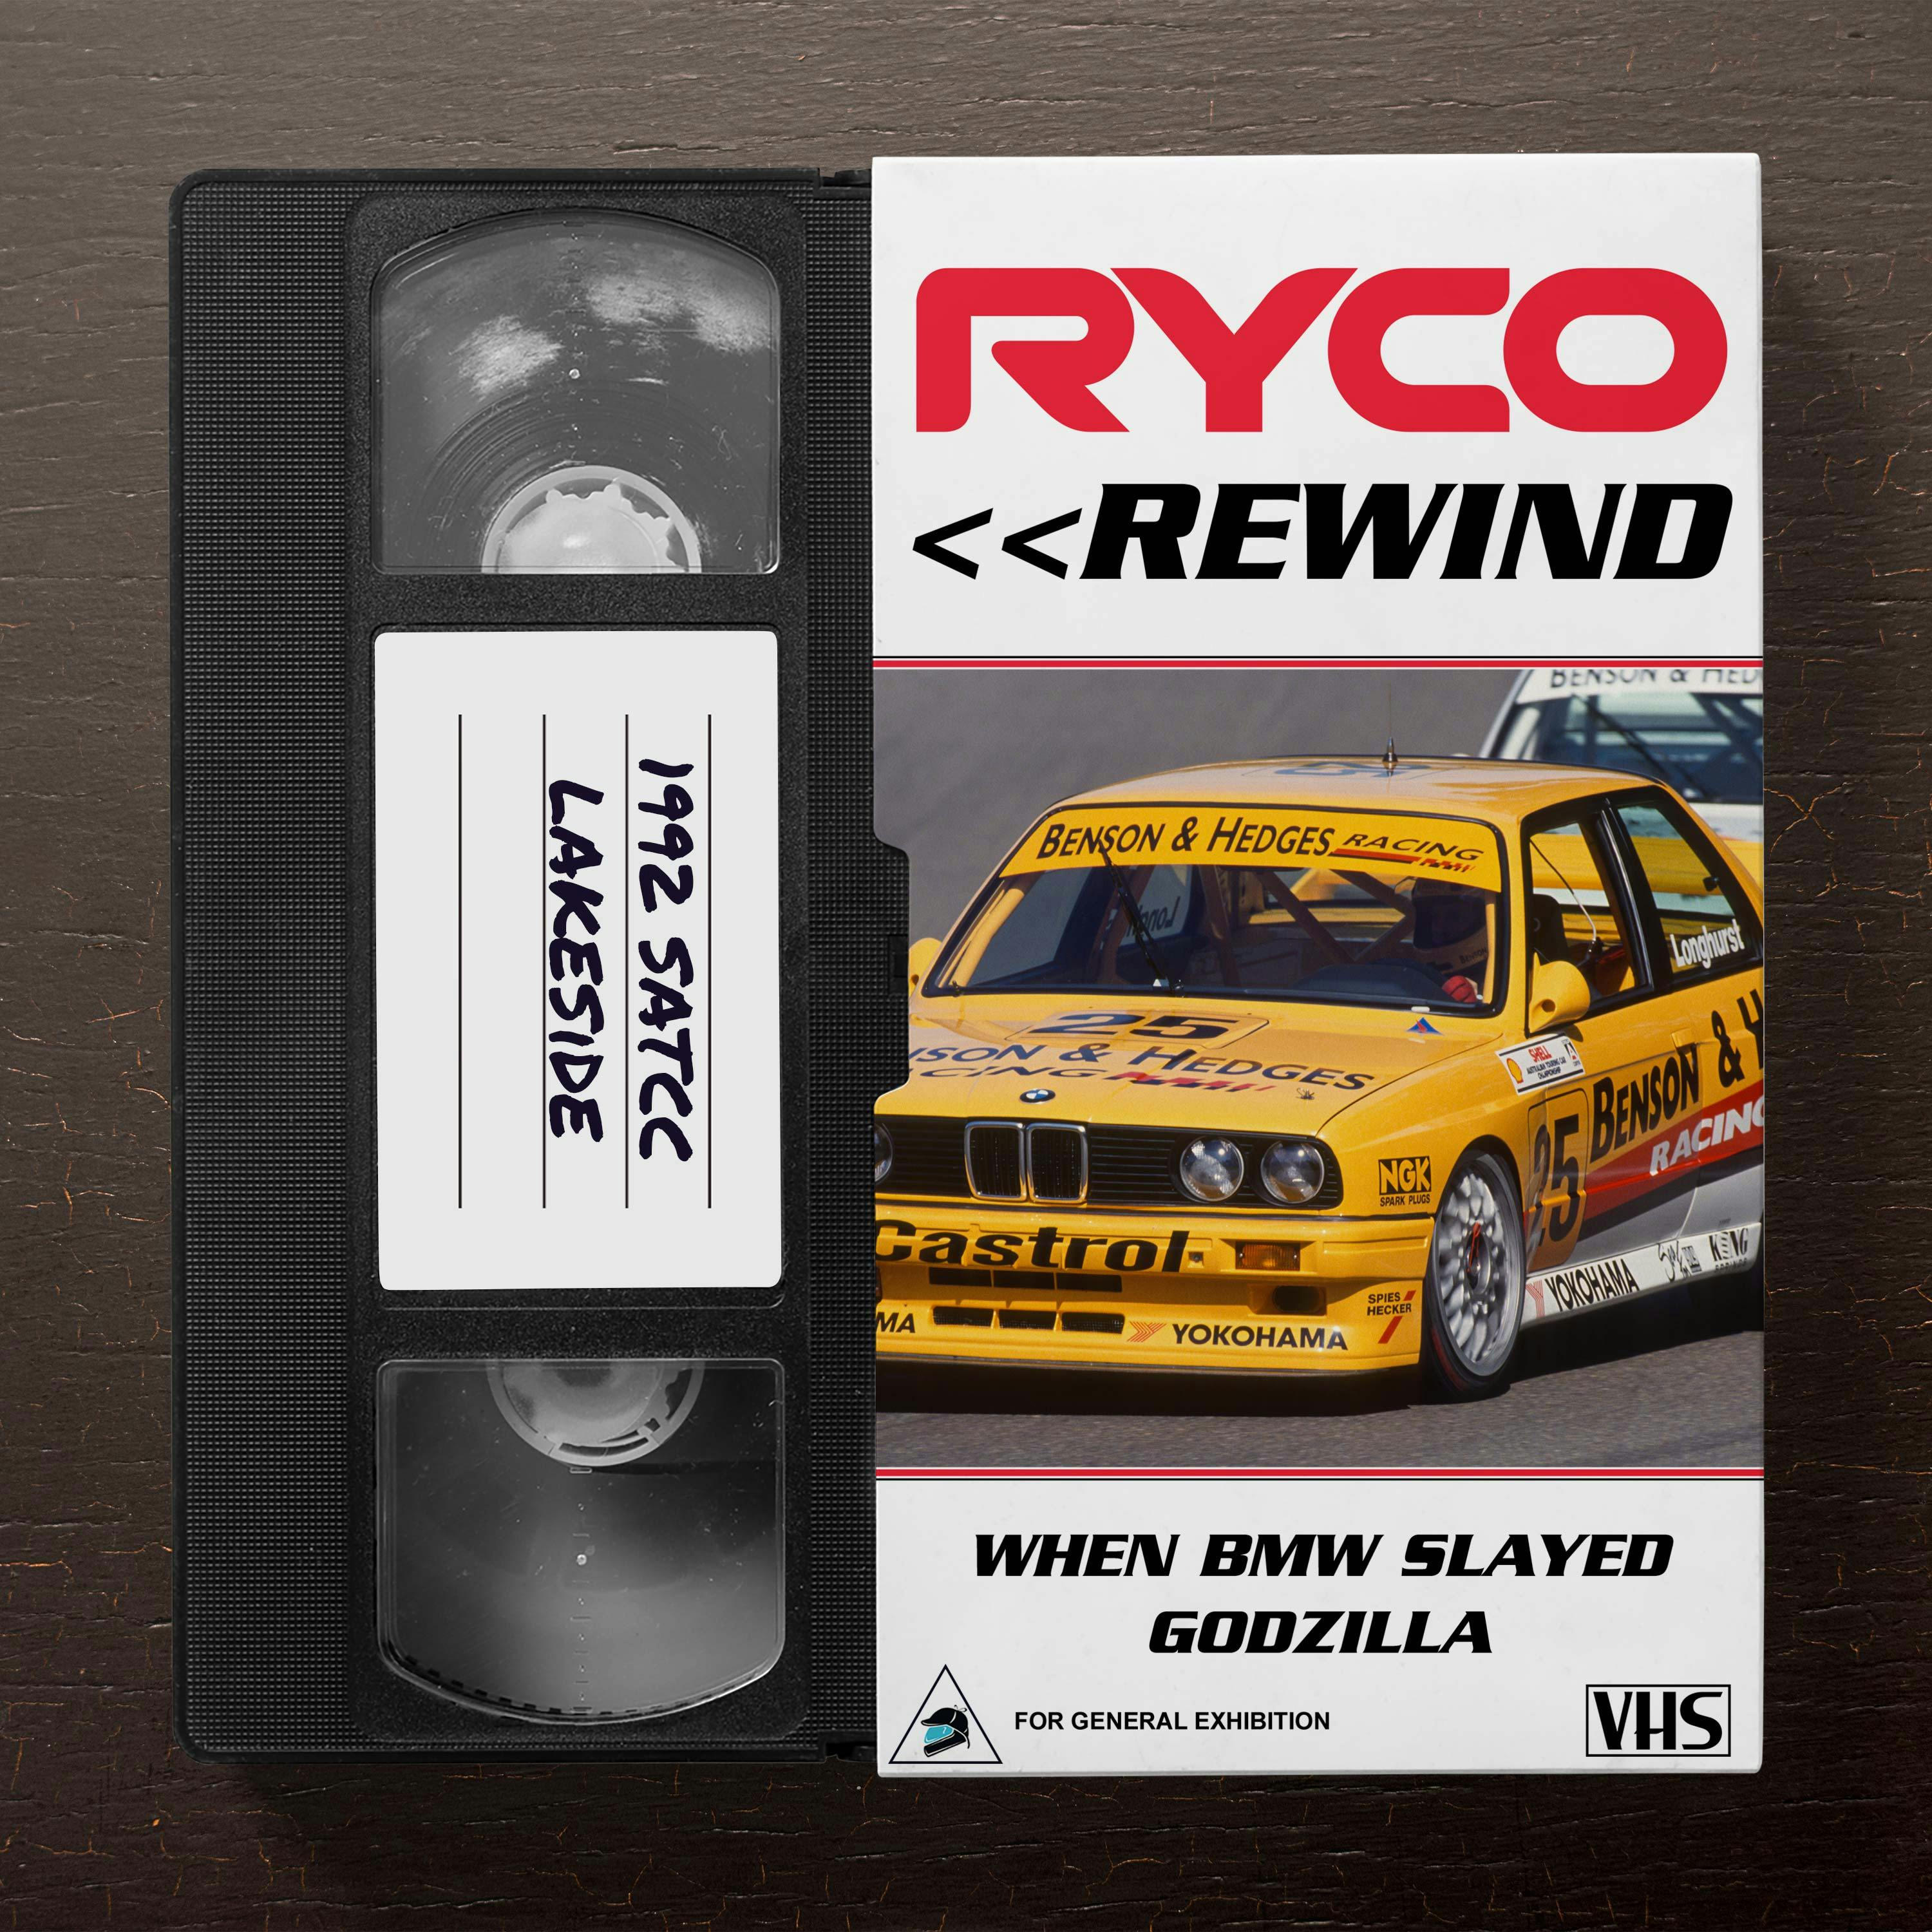 Ryco Rewind: BMW slays Godzilla, Larry & the Sierras